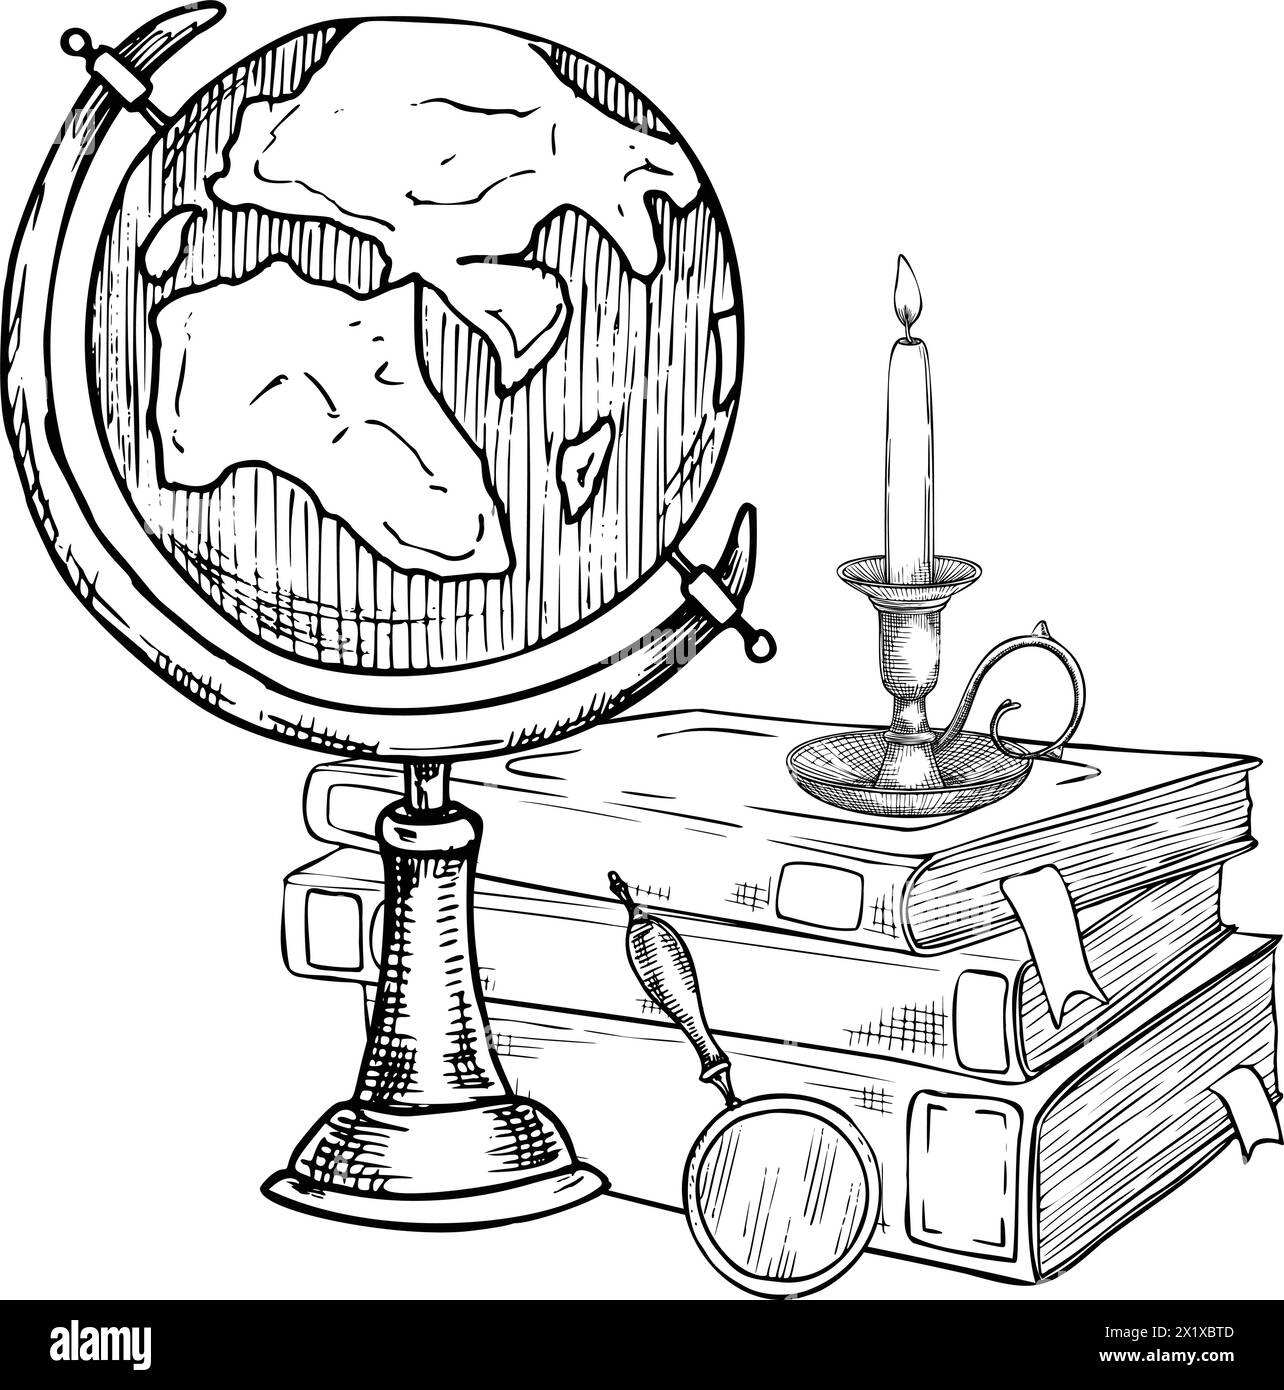 Globe et livres. Illustration vectorielle d'une pile de cahiers de géographie et de manuels avec une bougie vintage. Dessin d'objets de connaissance et d'éducation dans un style linéaire peint par des encres noires pour icône. Illustration de Vecteur